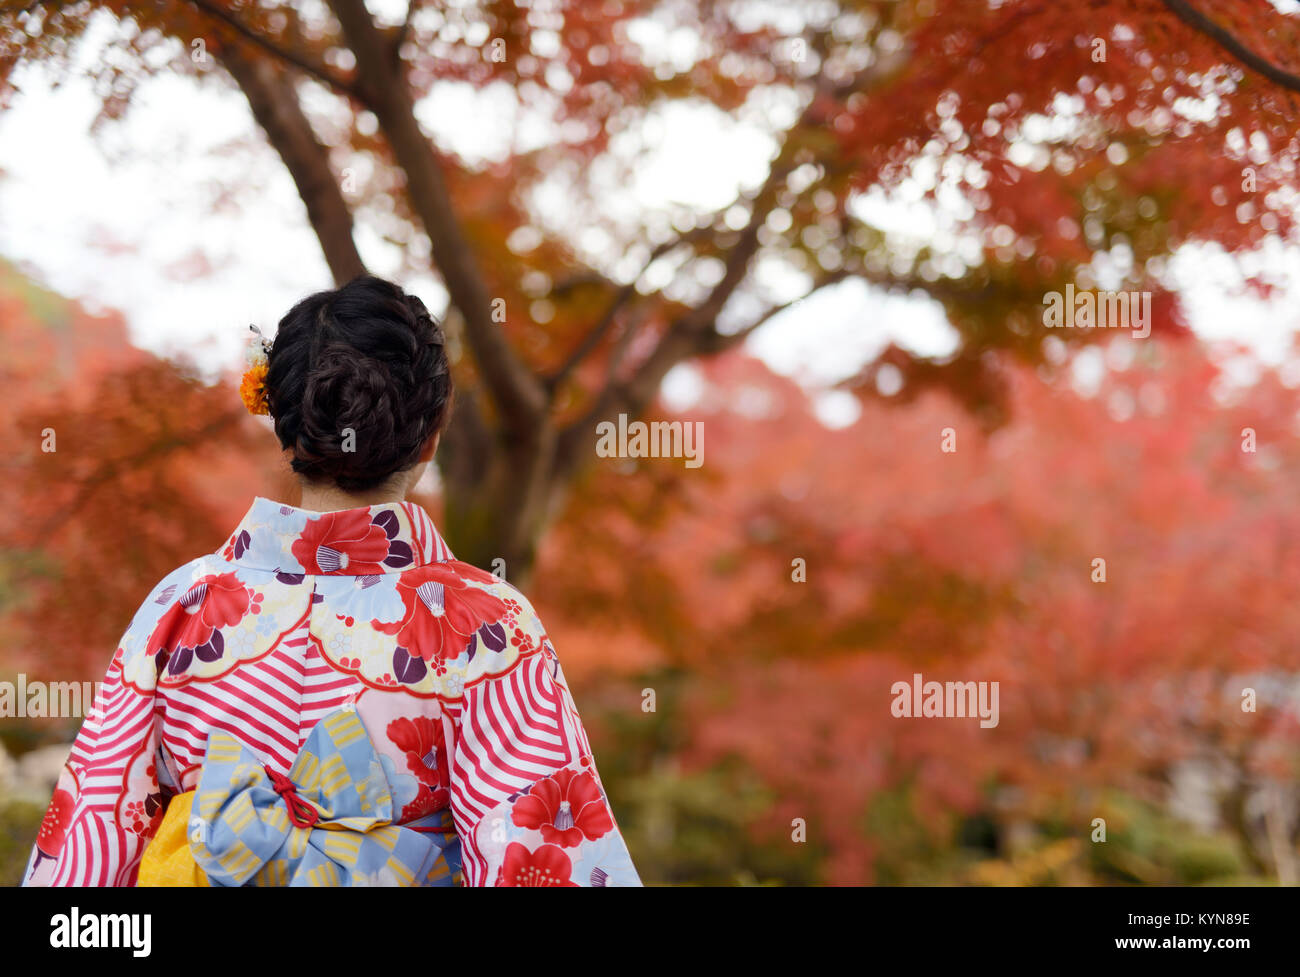 Licenza e stampe alle MaximImages.com:00 - retro di una donna giapponese che indossa un coloratissimo yukata kimono che si colorano in uno splendido scenario autunnale rosso a Kyoto, Foto Stock